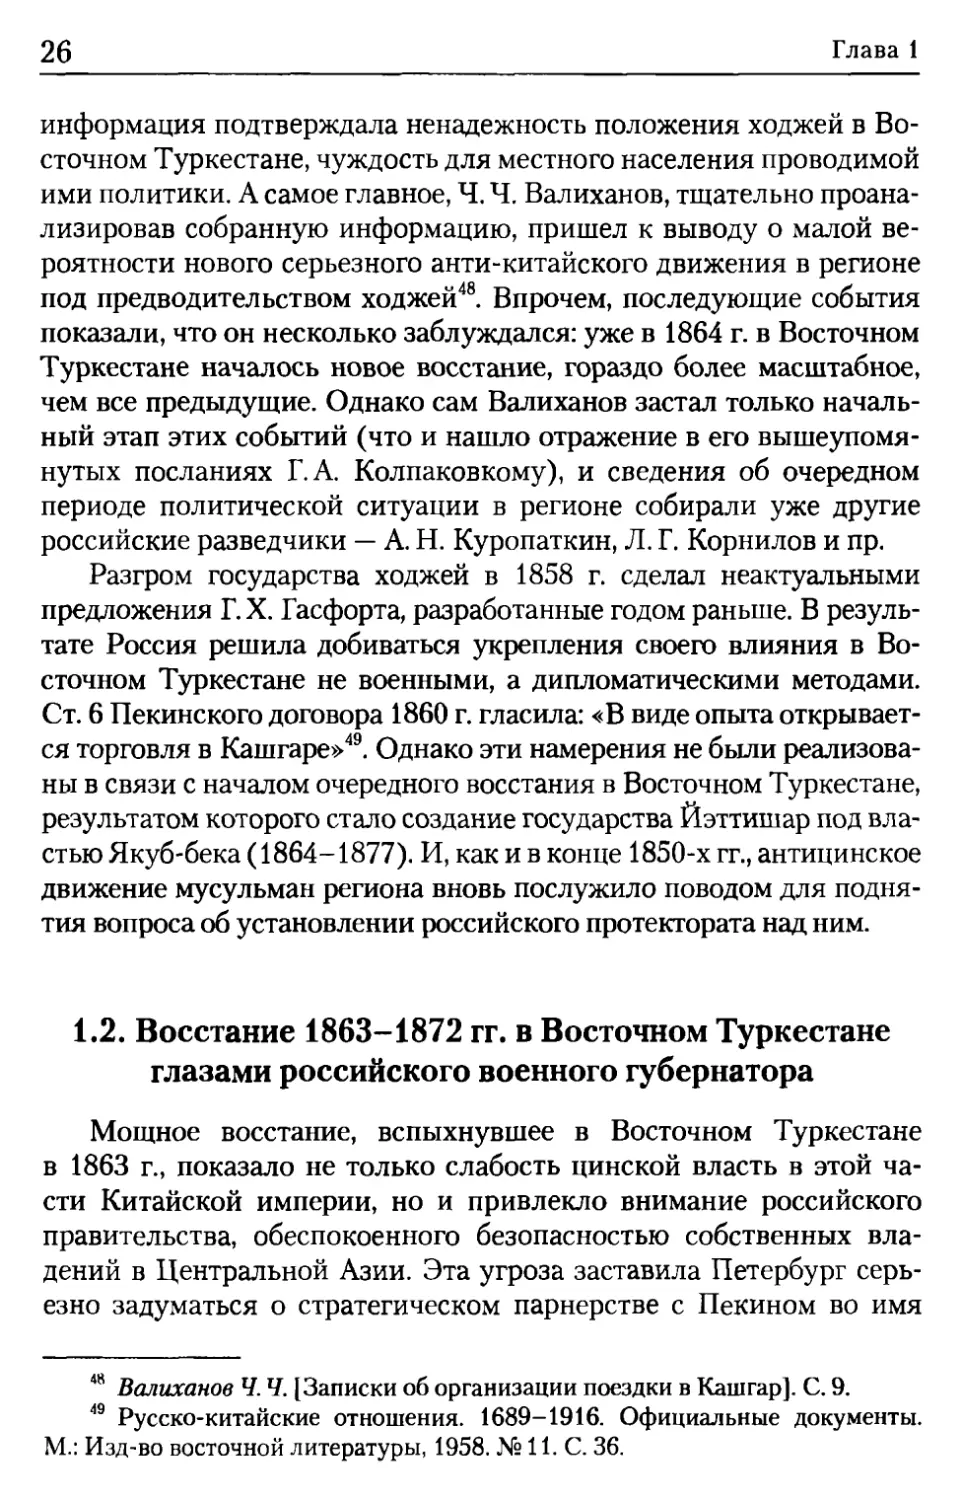 1.2. Восстание 1863-1872 гг. в Восточном Туркестане глазами российского военного губернатора